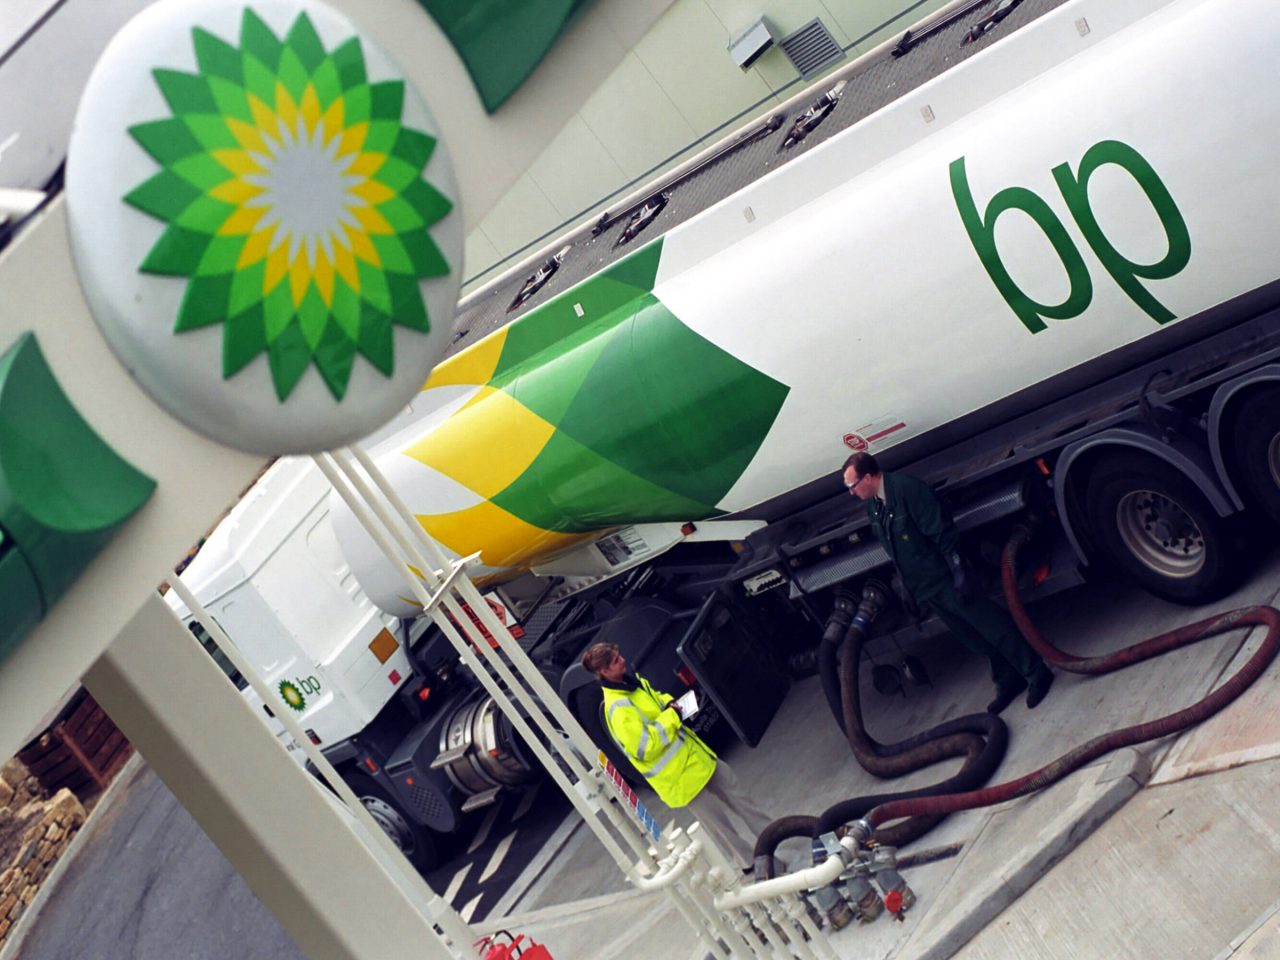 ԱՄՆ-ը մտադիր է 16-18 մլրդ դոլարով տուգանել BP ընկերությանը